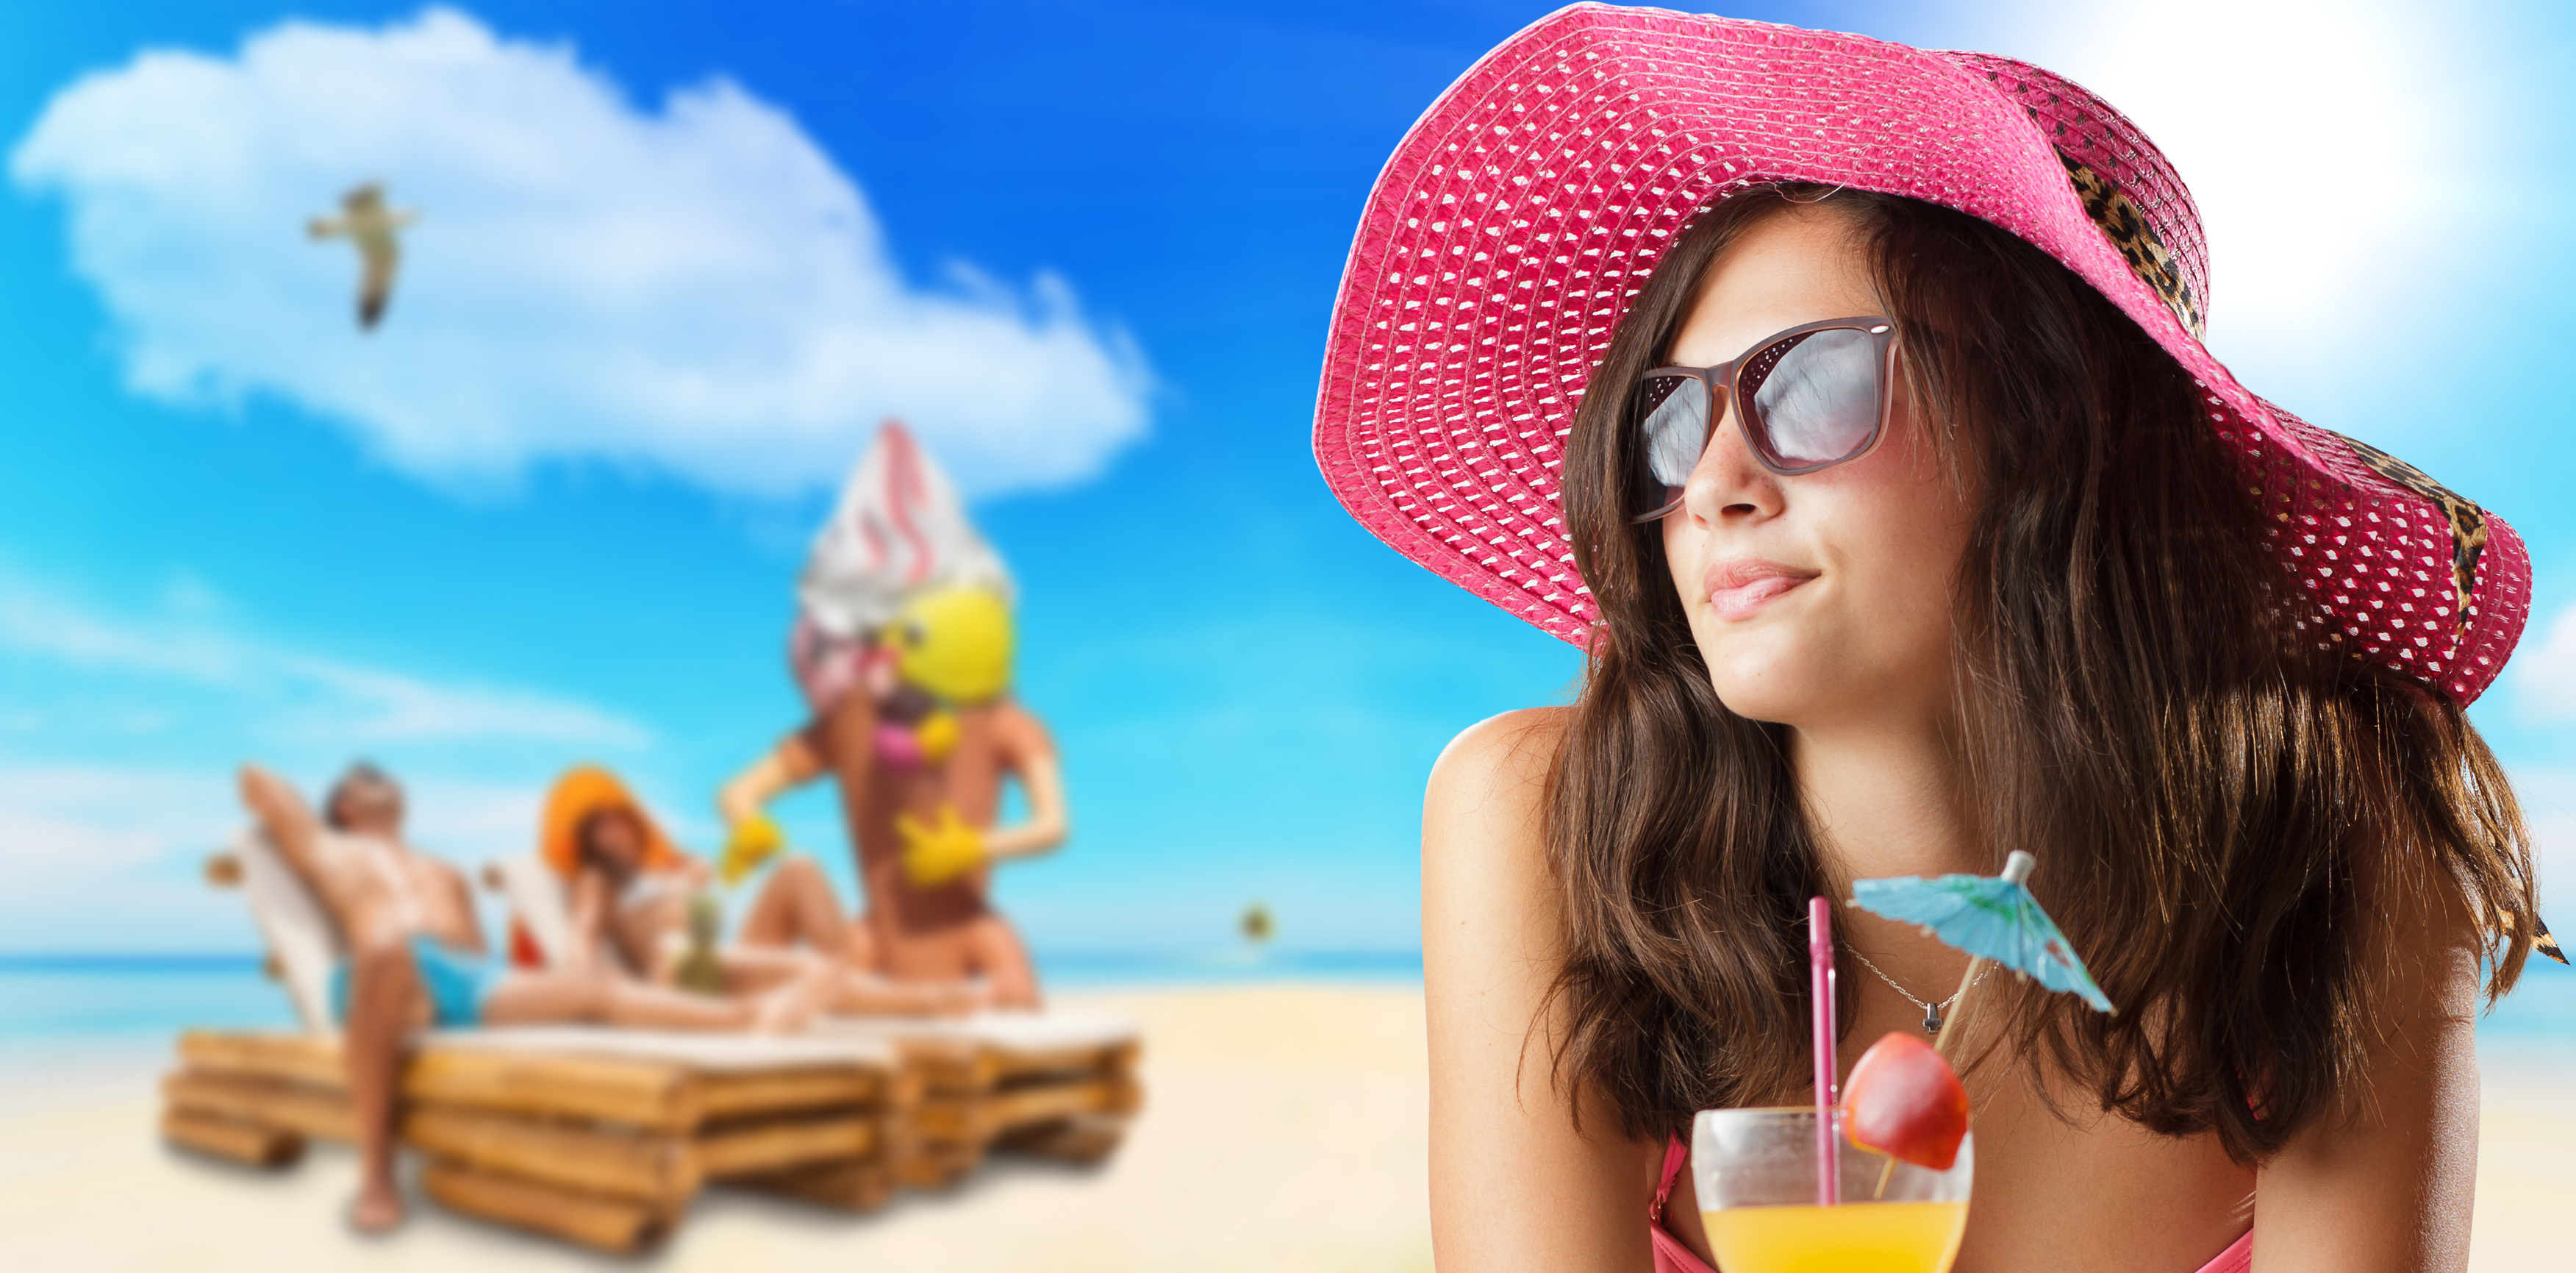 Отдых красивая девушка. Лето пляж. Девушка в шляпе на пляже. Лето пляж девушки. Солнце море пляж девушка в шляпе.